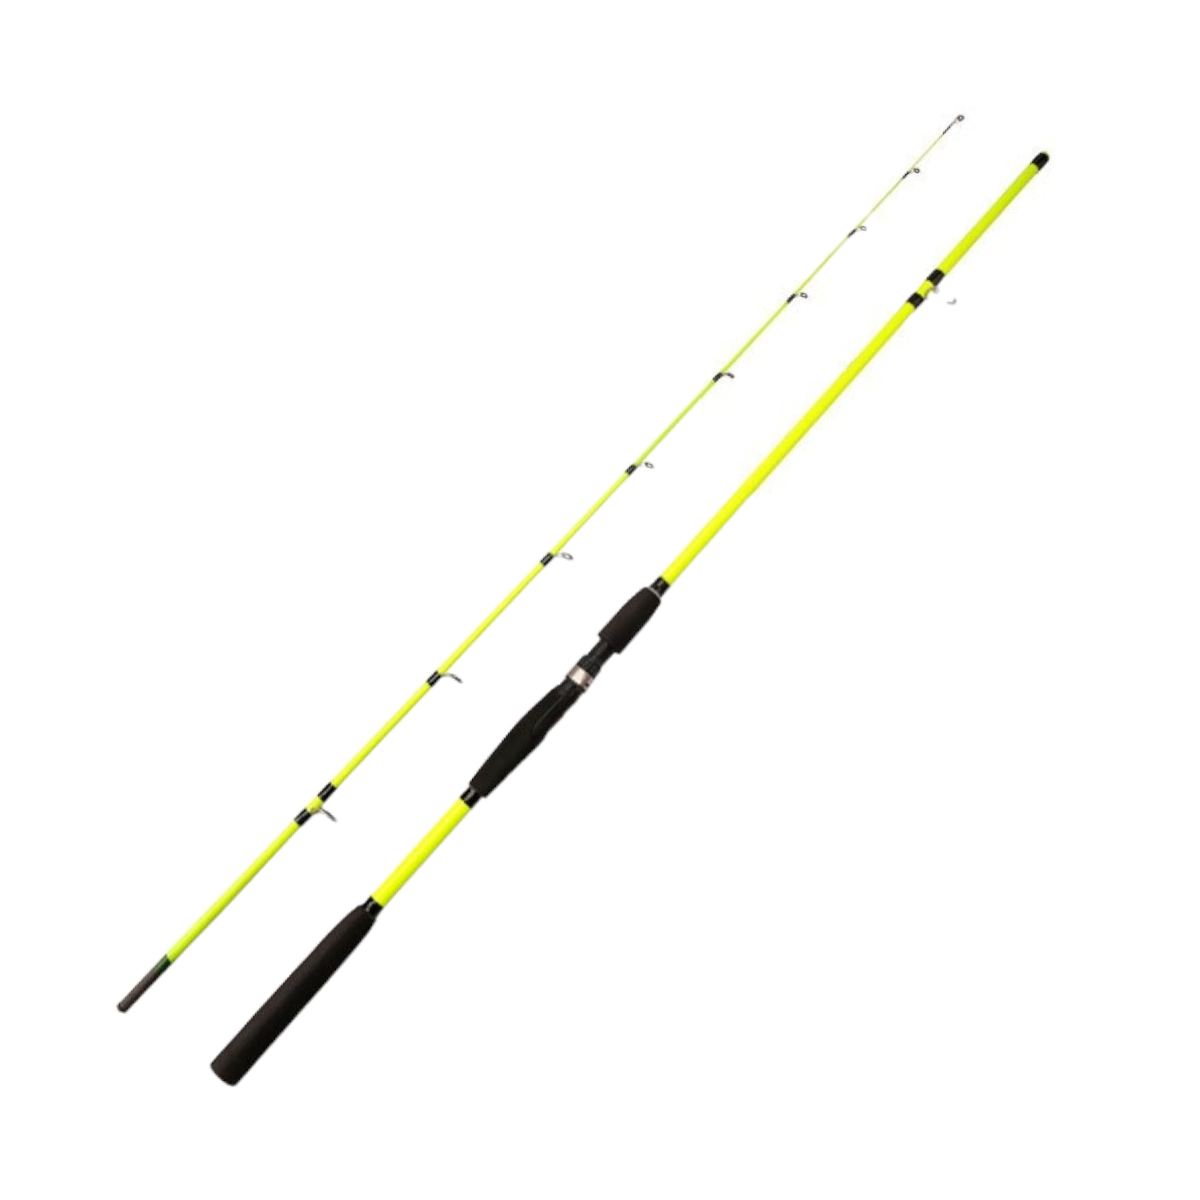 Caña pescar fibra carbono flexible amarilla 240 cm CÑS37